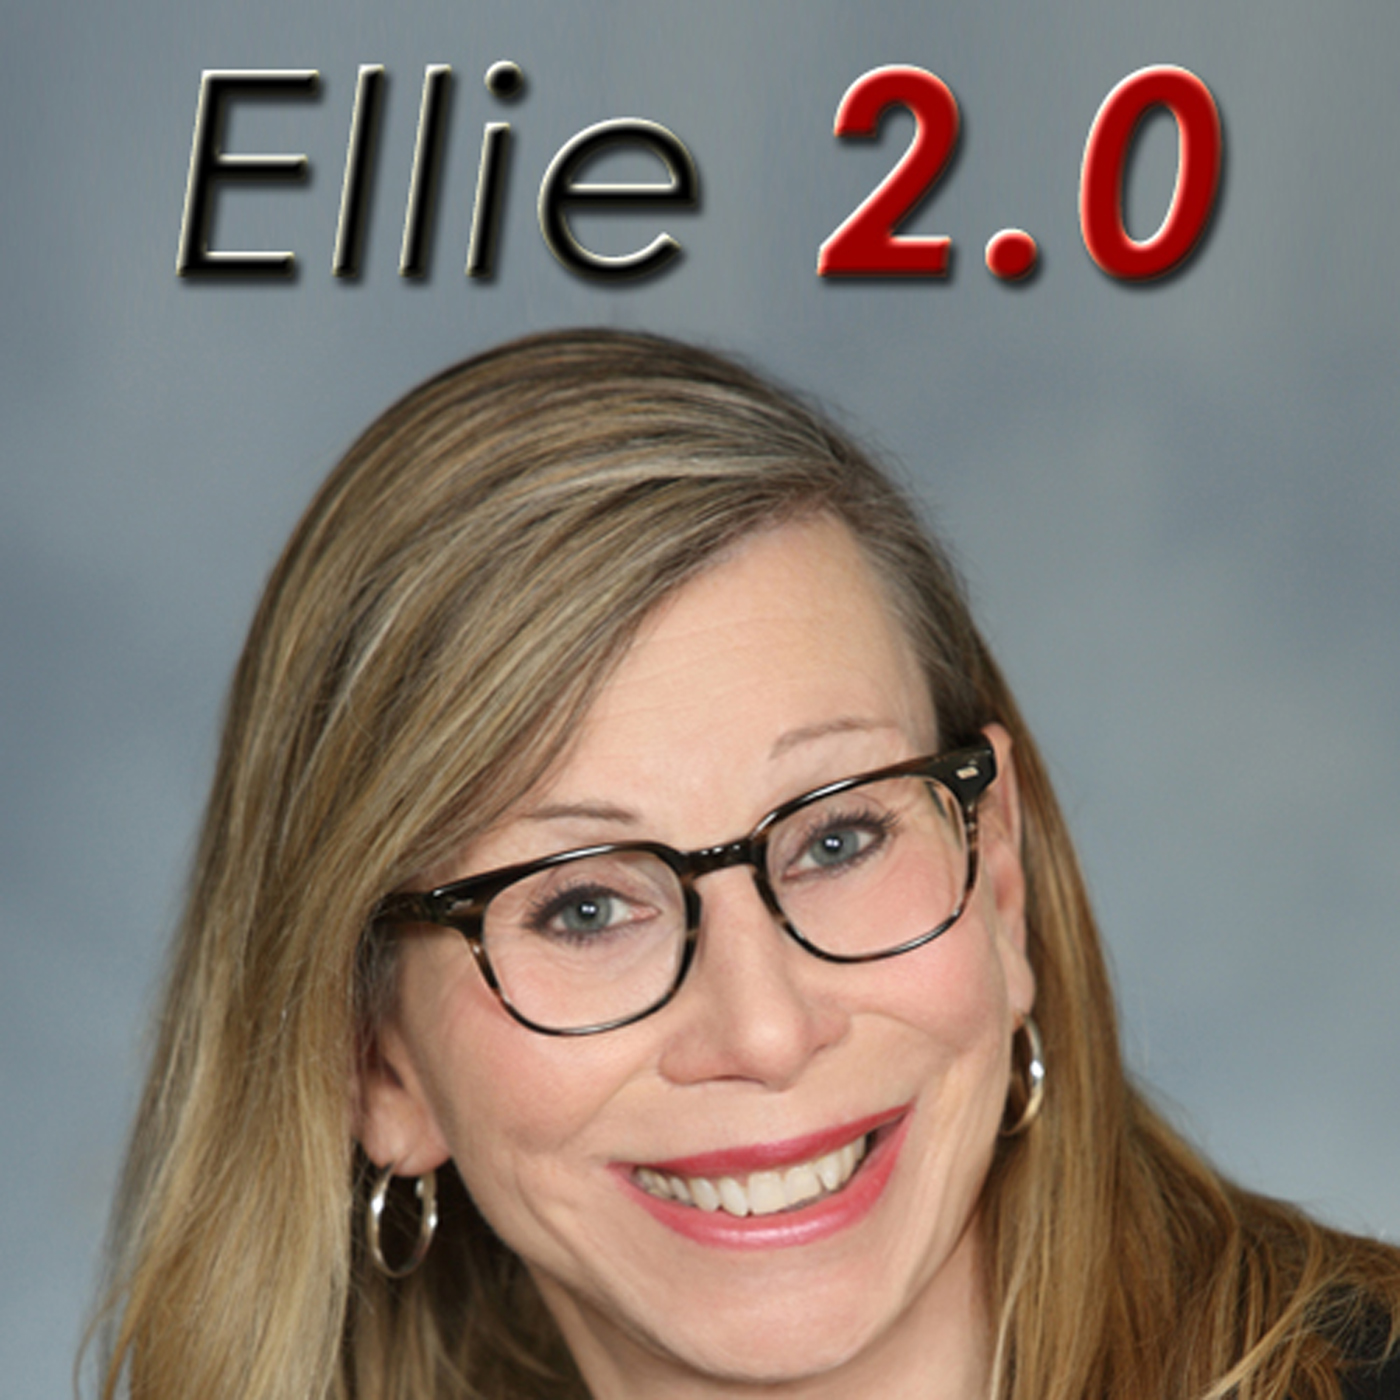 Ellie 2.0 Radio